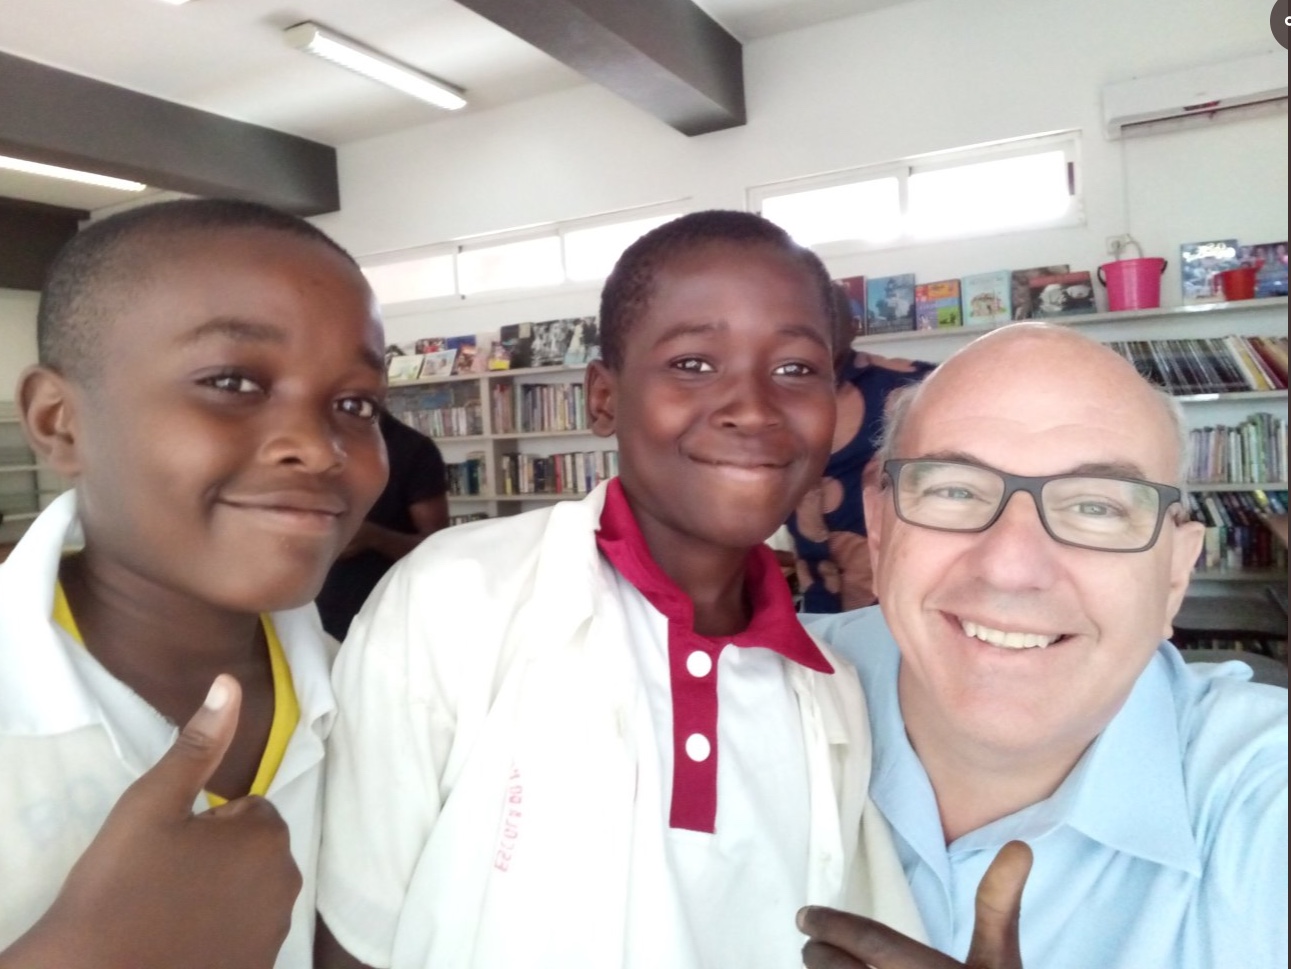 Jeff Hoffman cùng các bạn nhỏ tại Angola - châu Phi. Ảnh: Jeff Hoffman